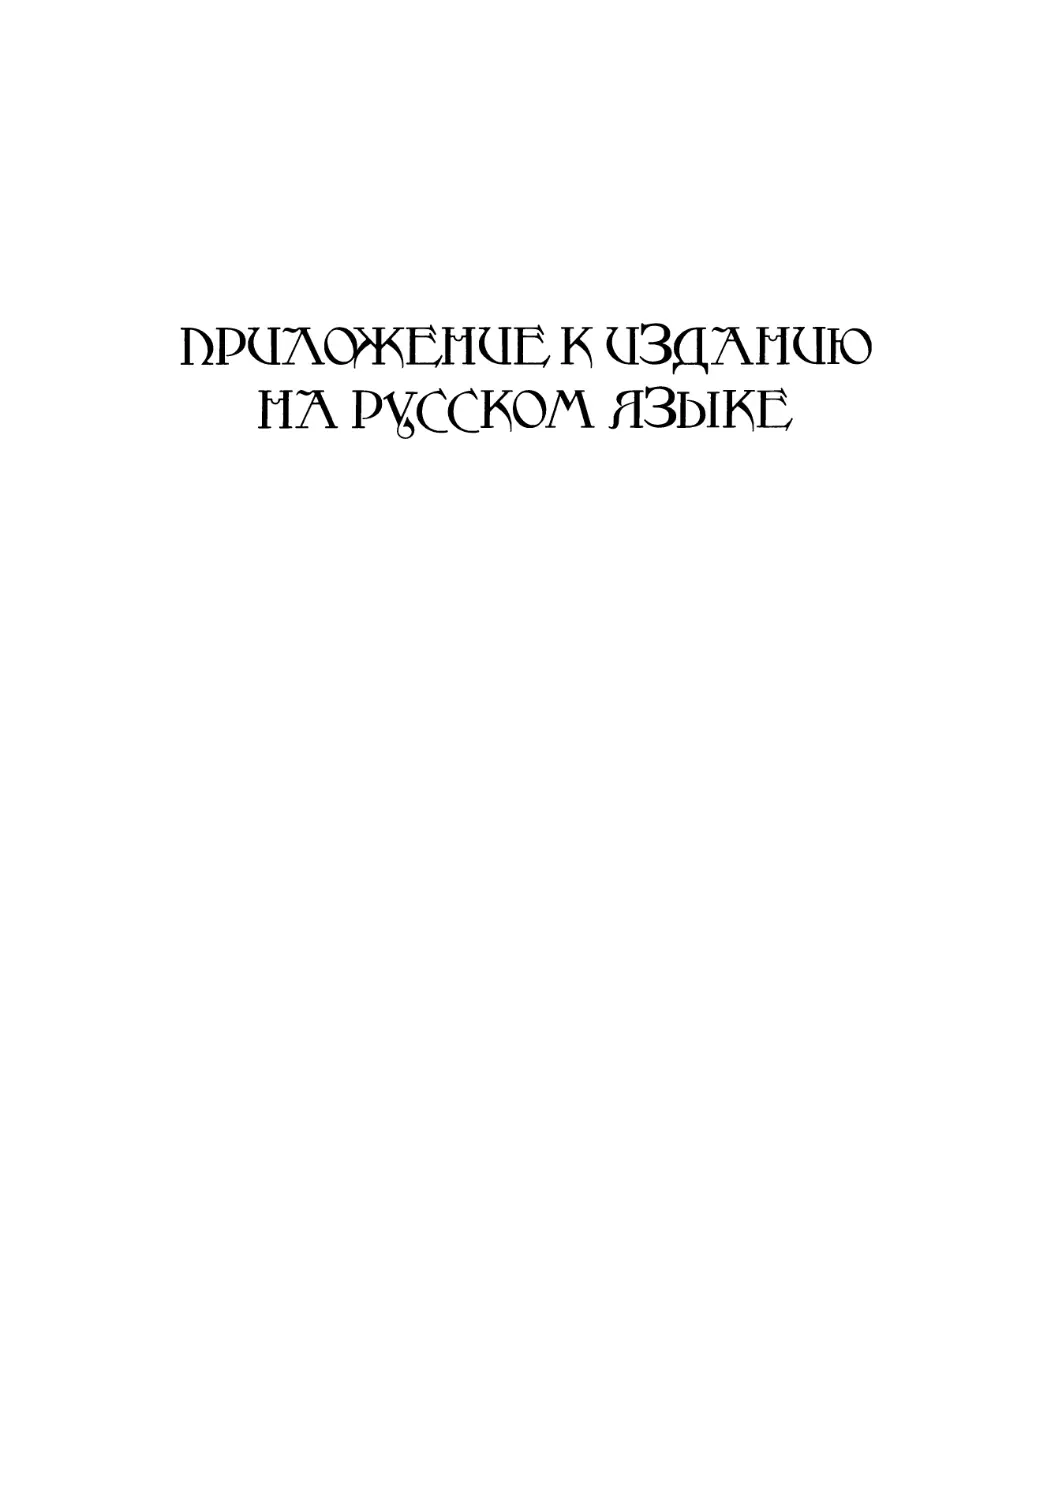 Приложения к изданию на русском языке